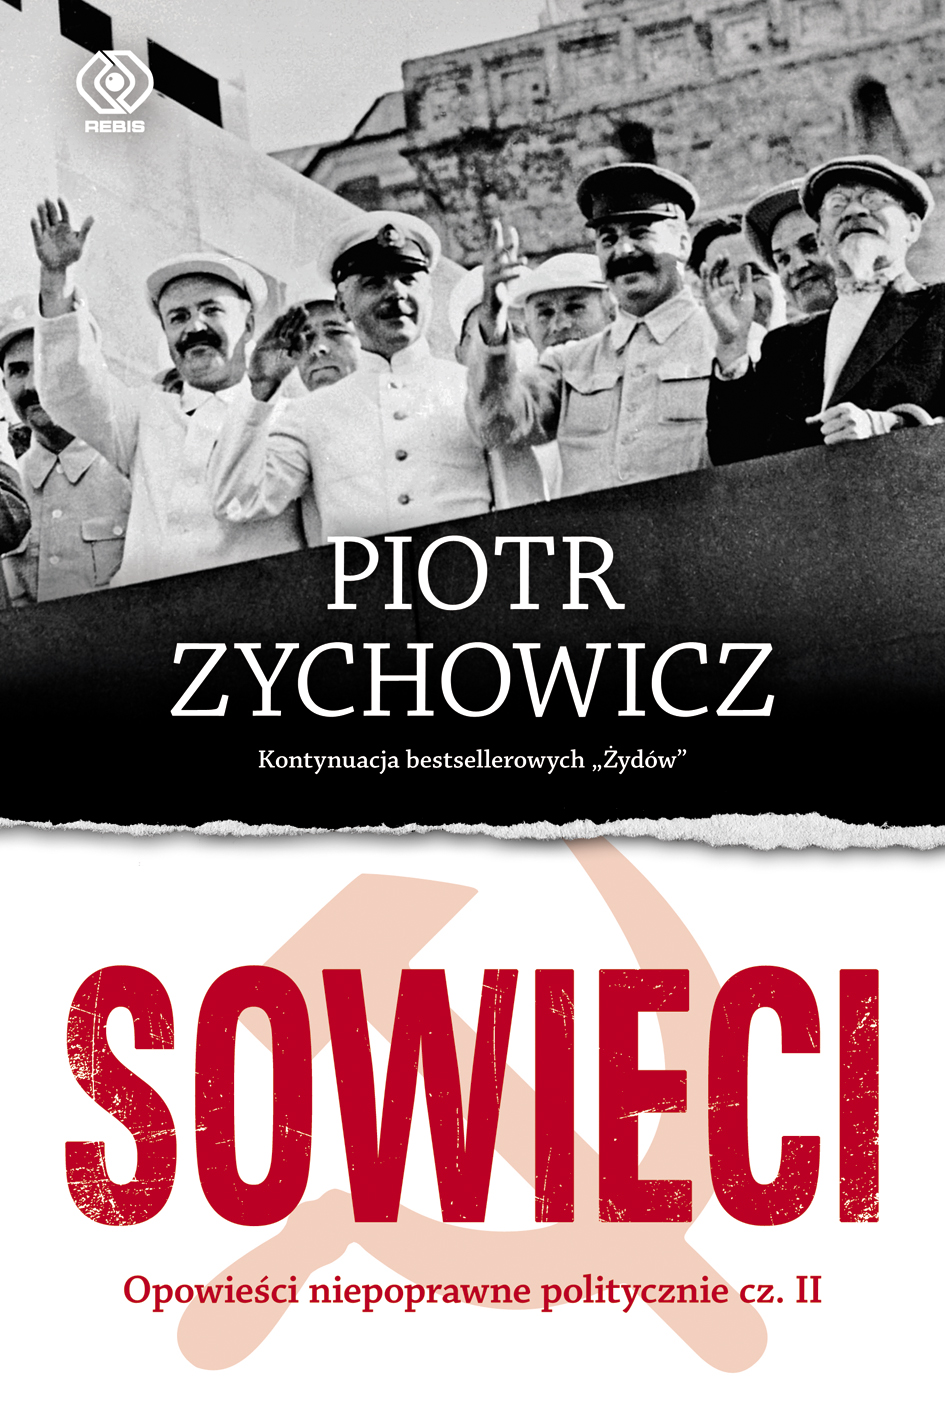 Najnowsza ksiązka Piotra Zychowicza od 22.11 w ksiegarniach!